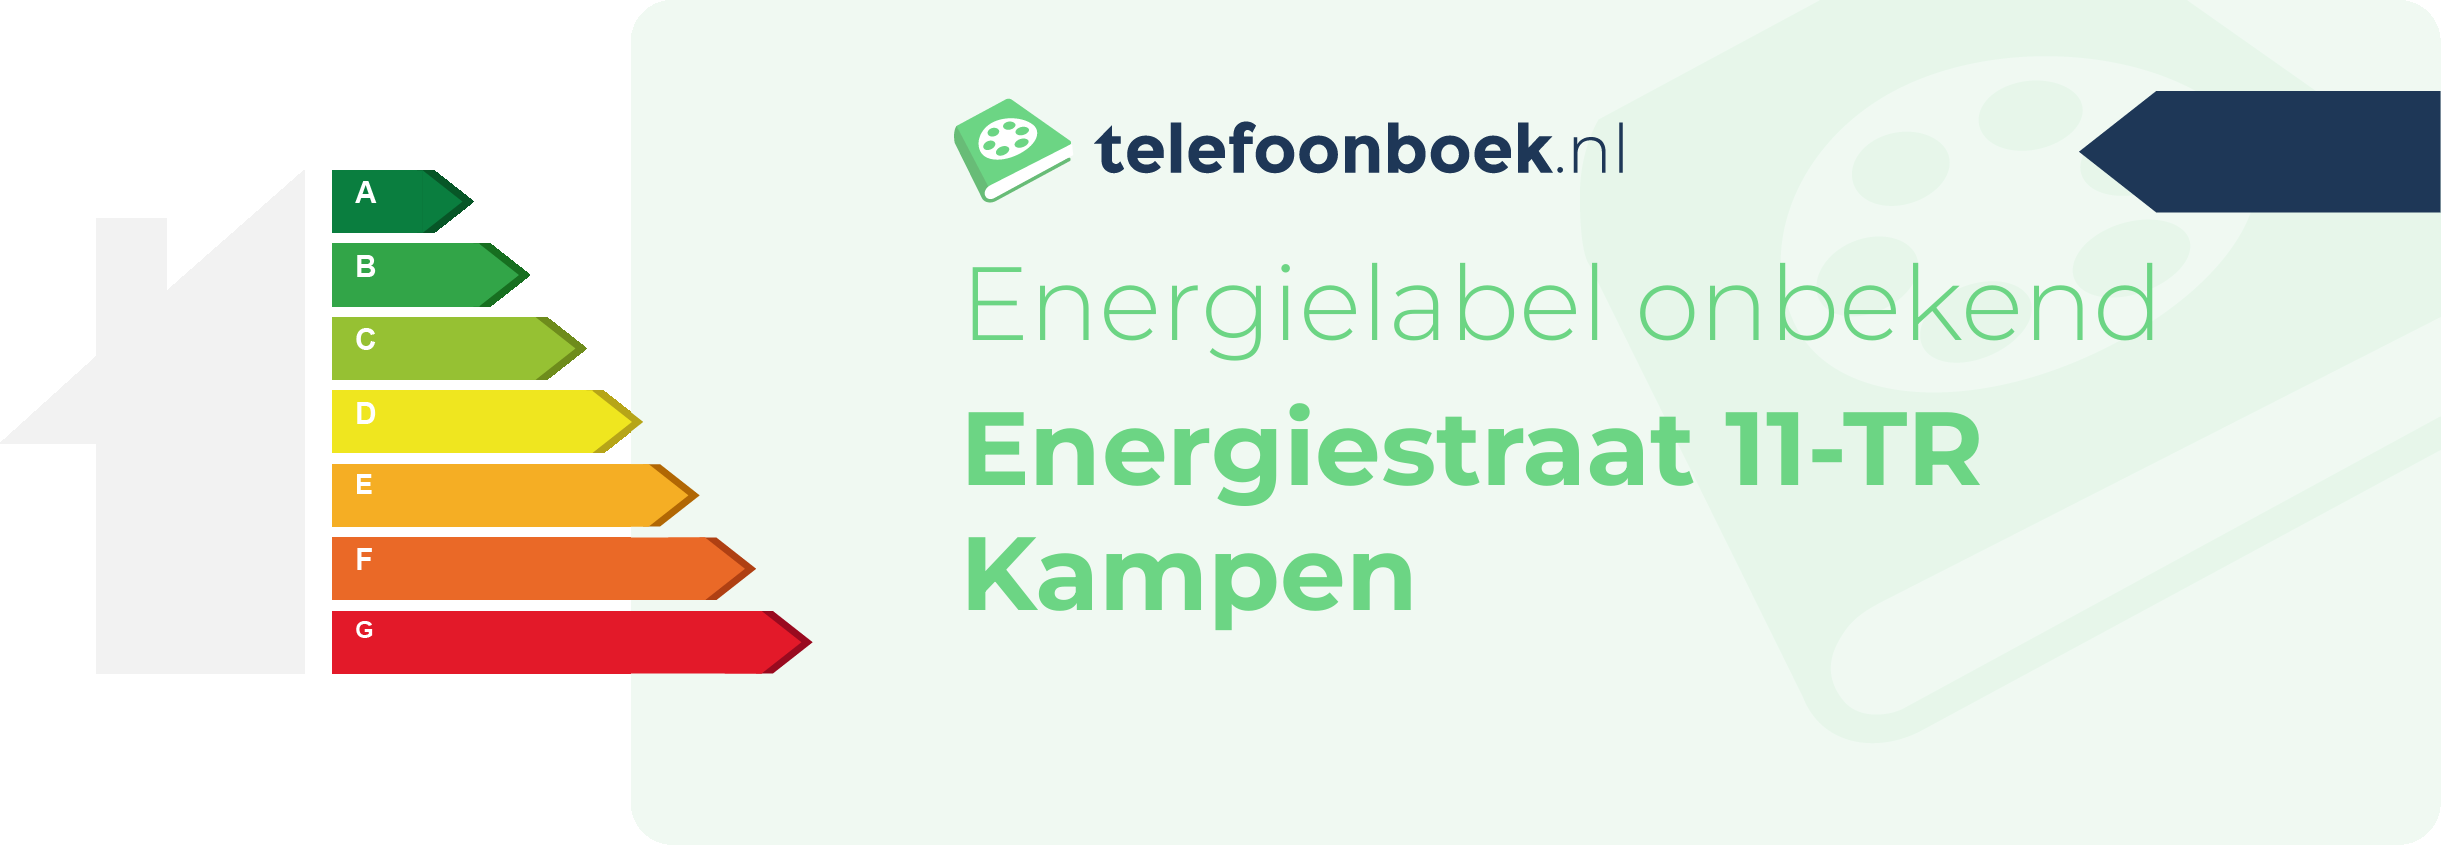 Energielabel Energiestraat 11-TR Kampen